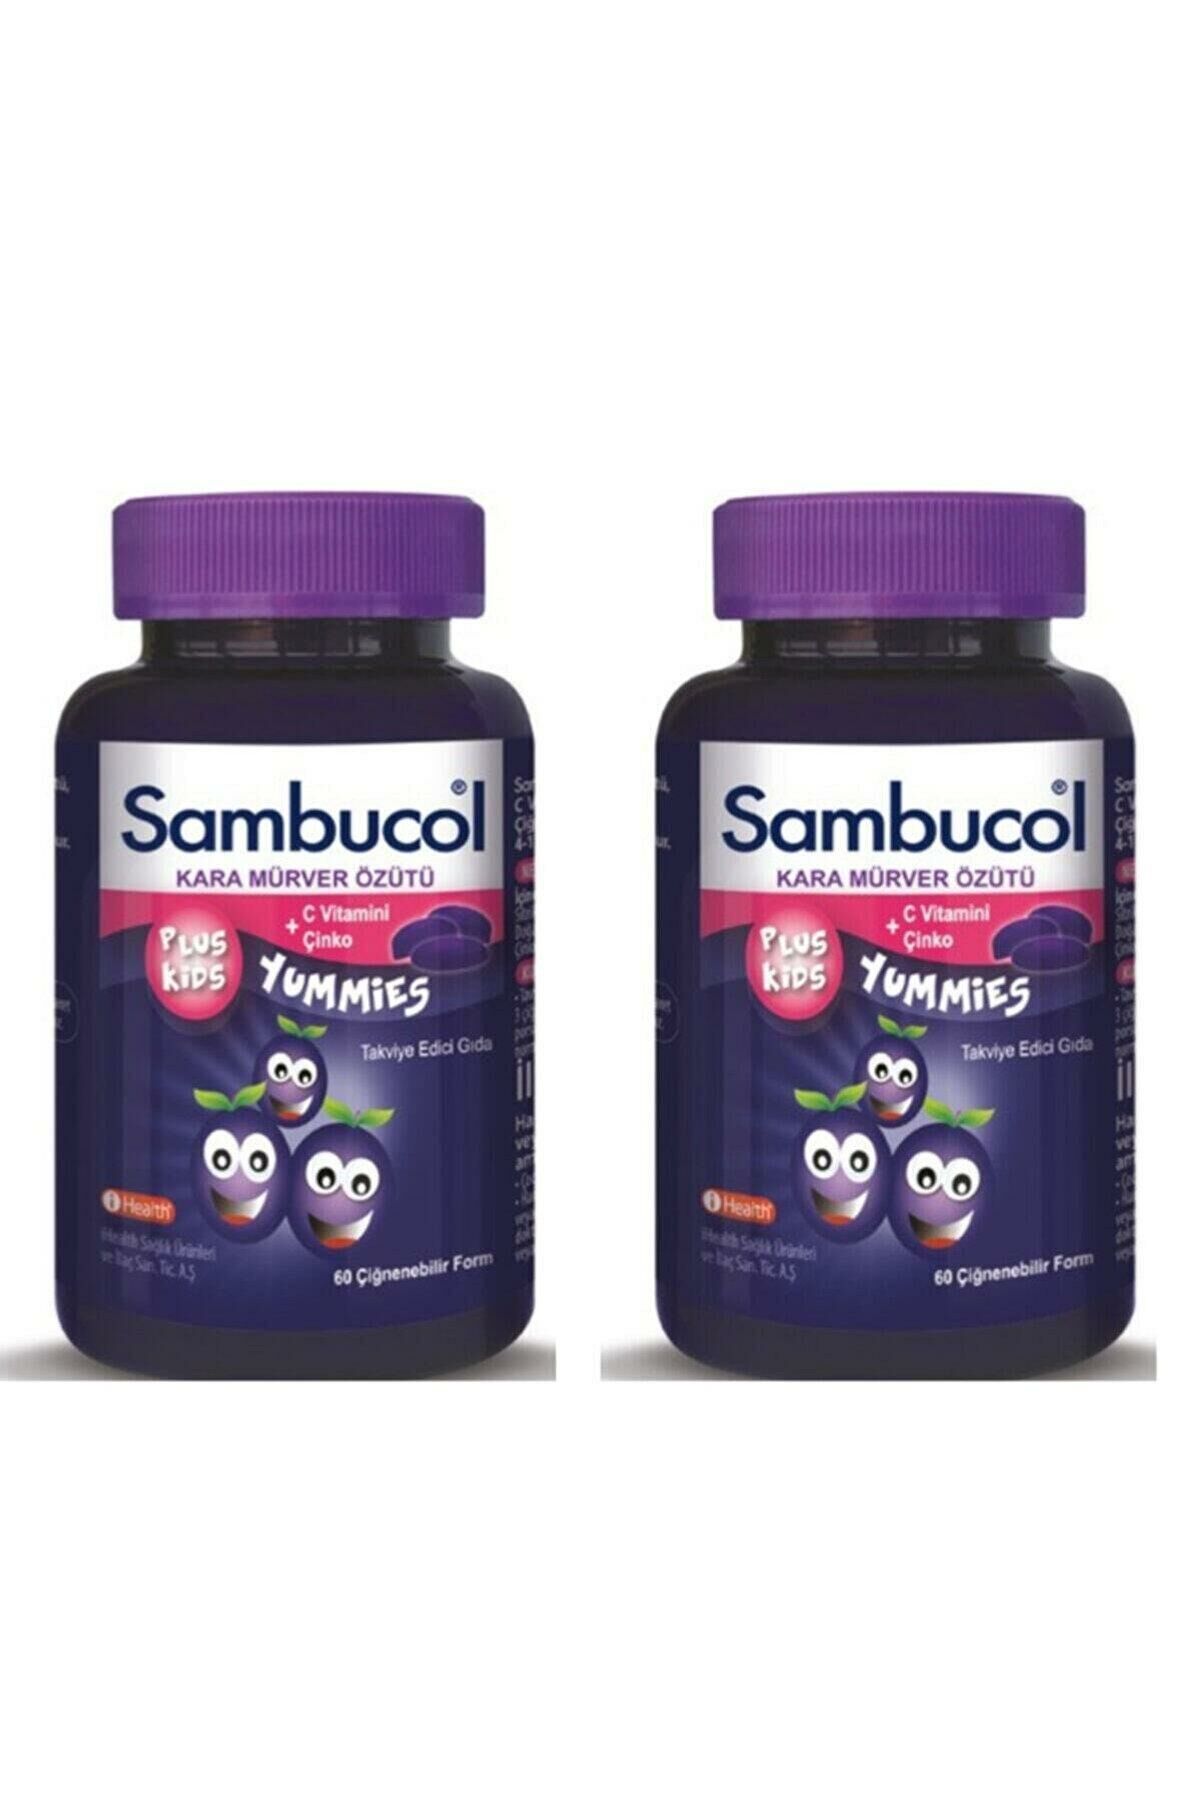 Sambucol Plus Kids Yummies 60 Çiğnenebilir Form 2'li Set